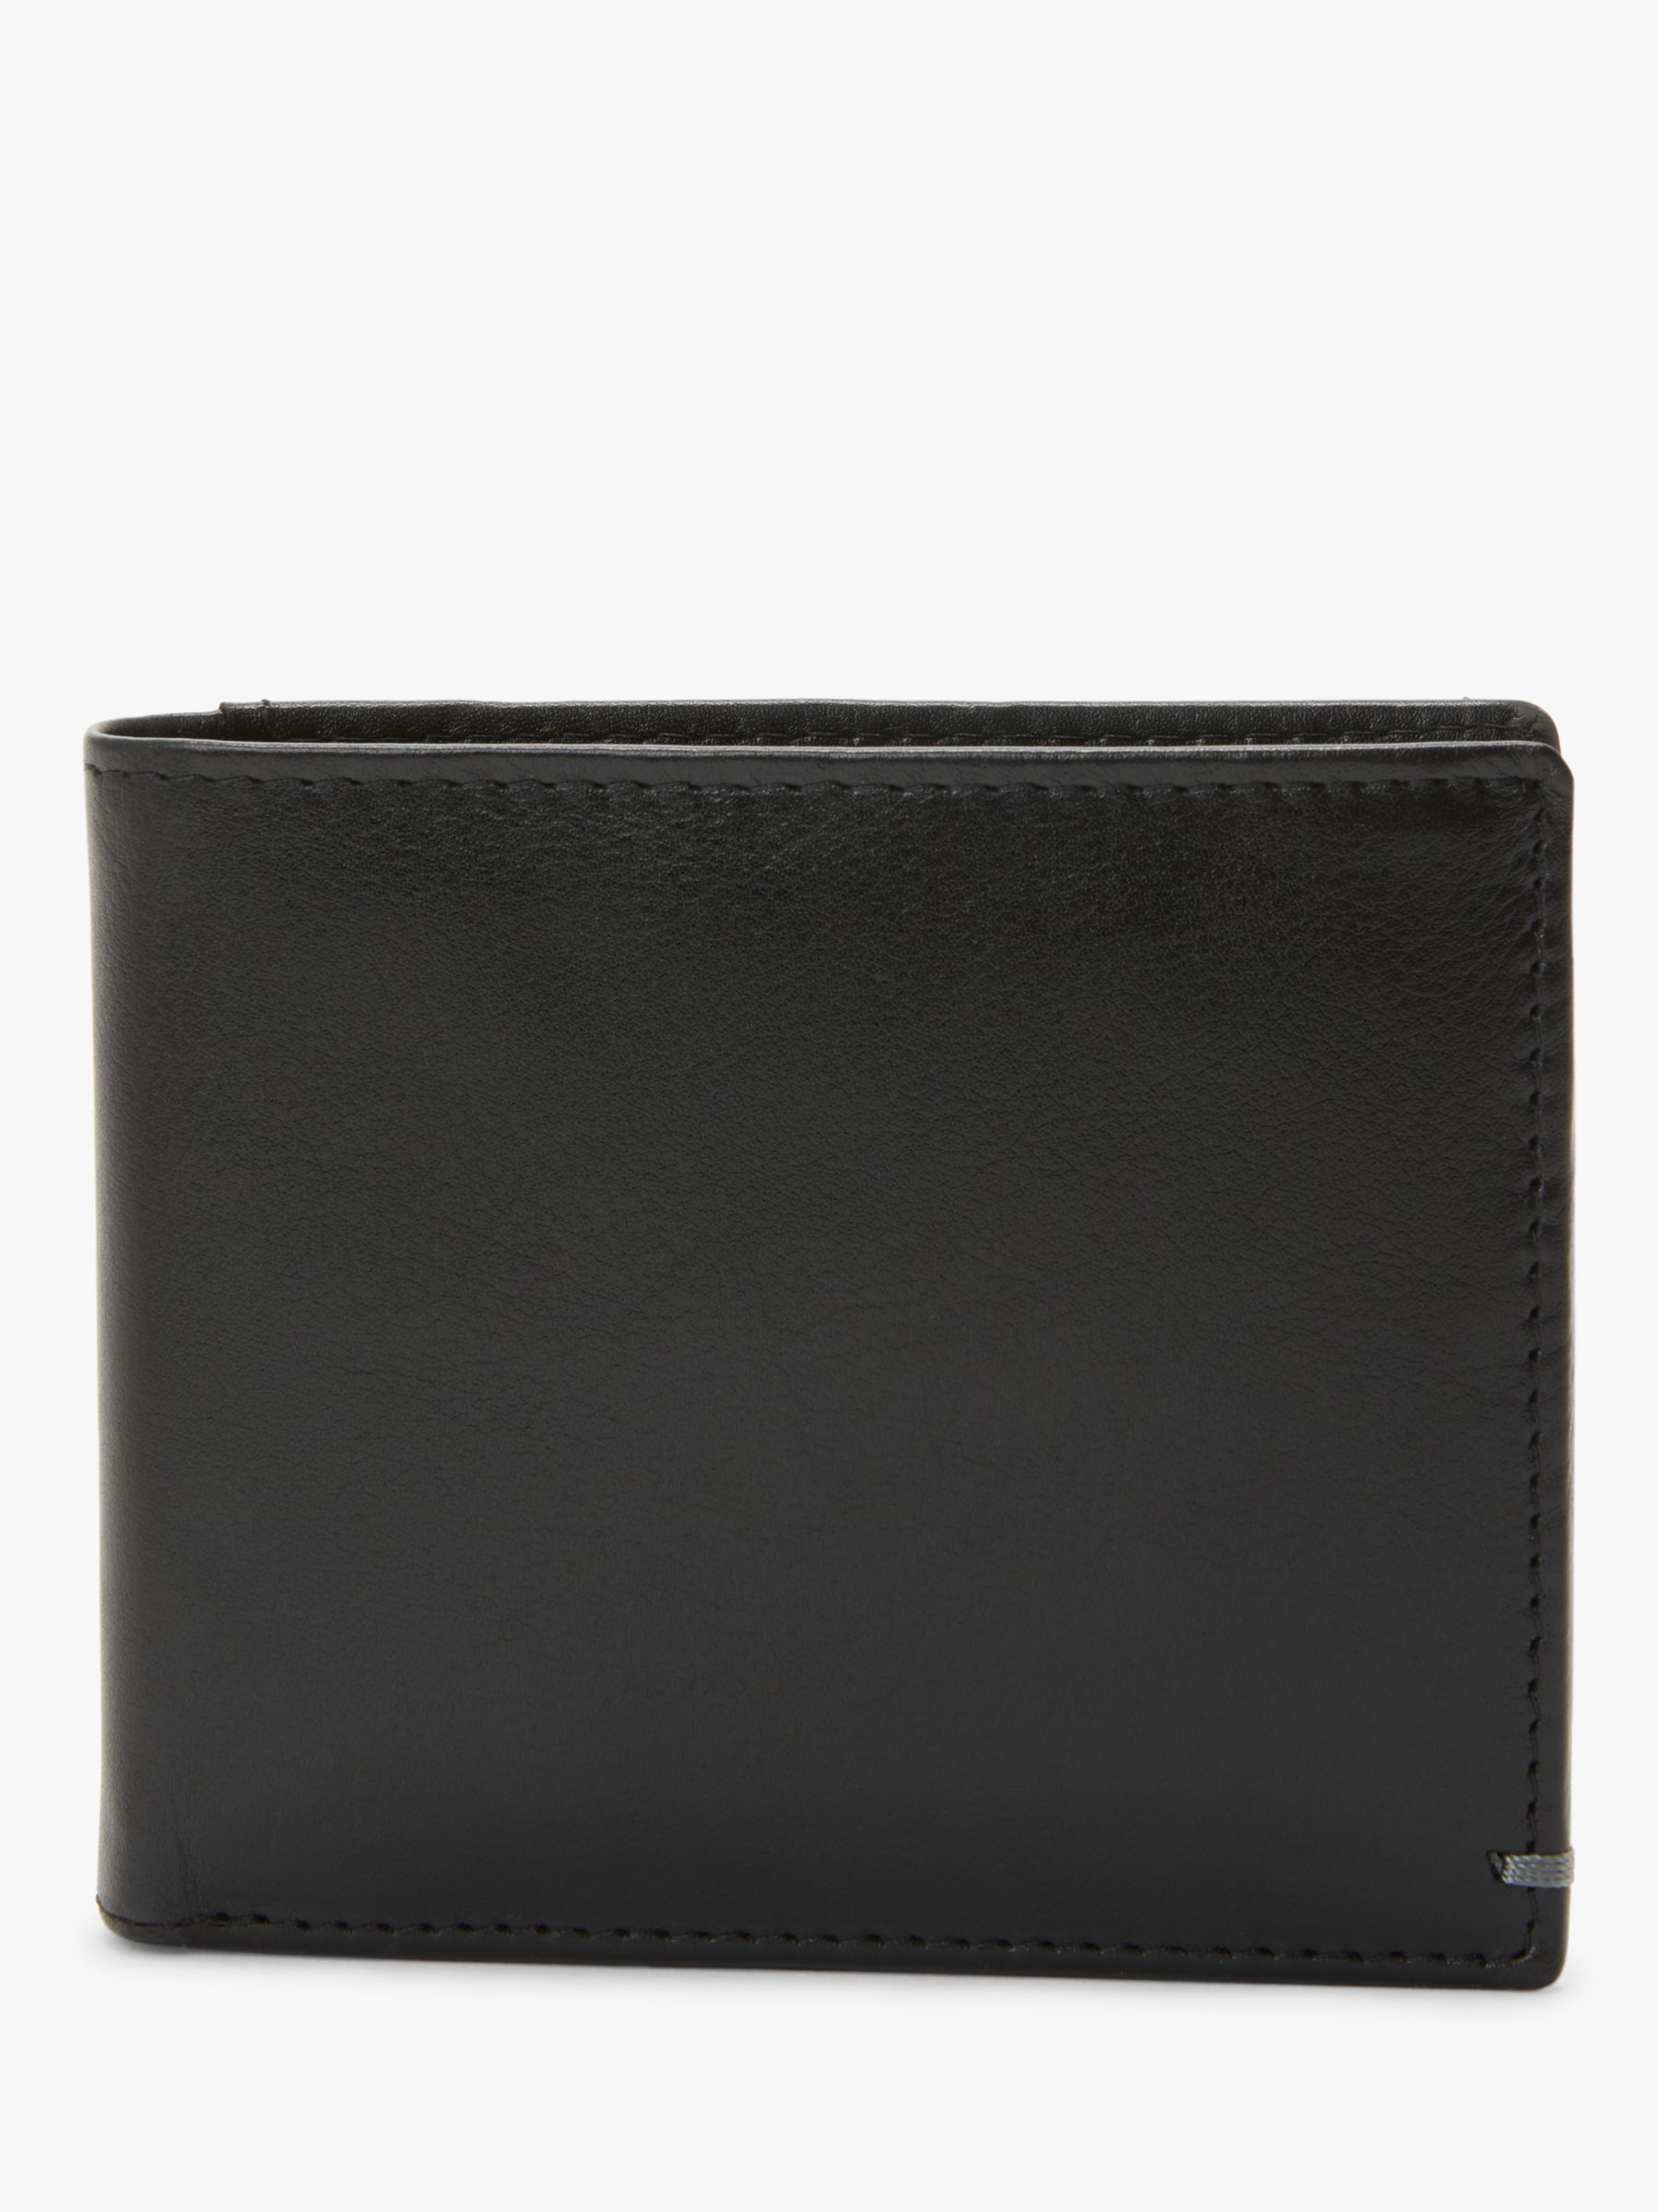 John Lewis & Partners RFID Blocking Leather Bifold Card Wallet, Black